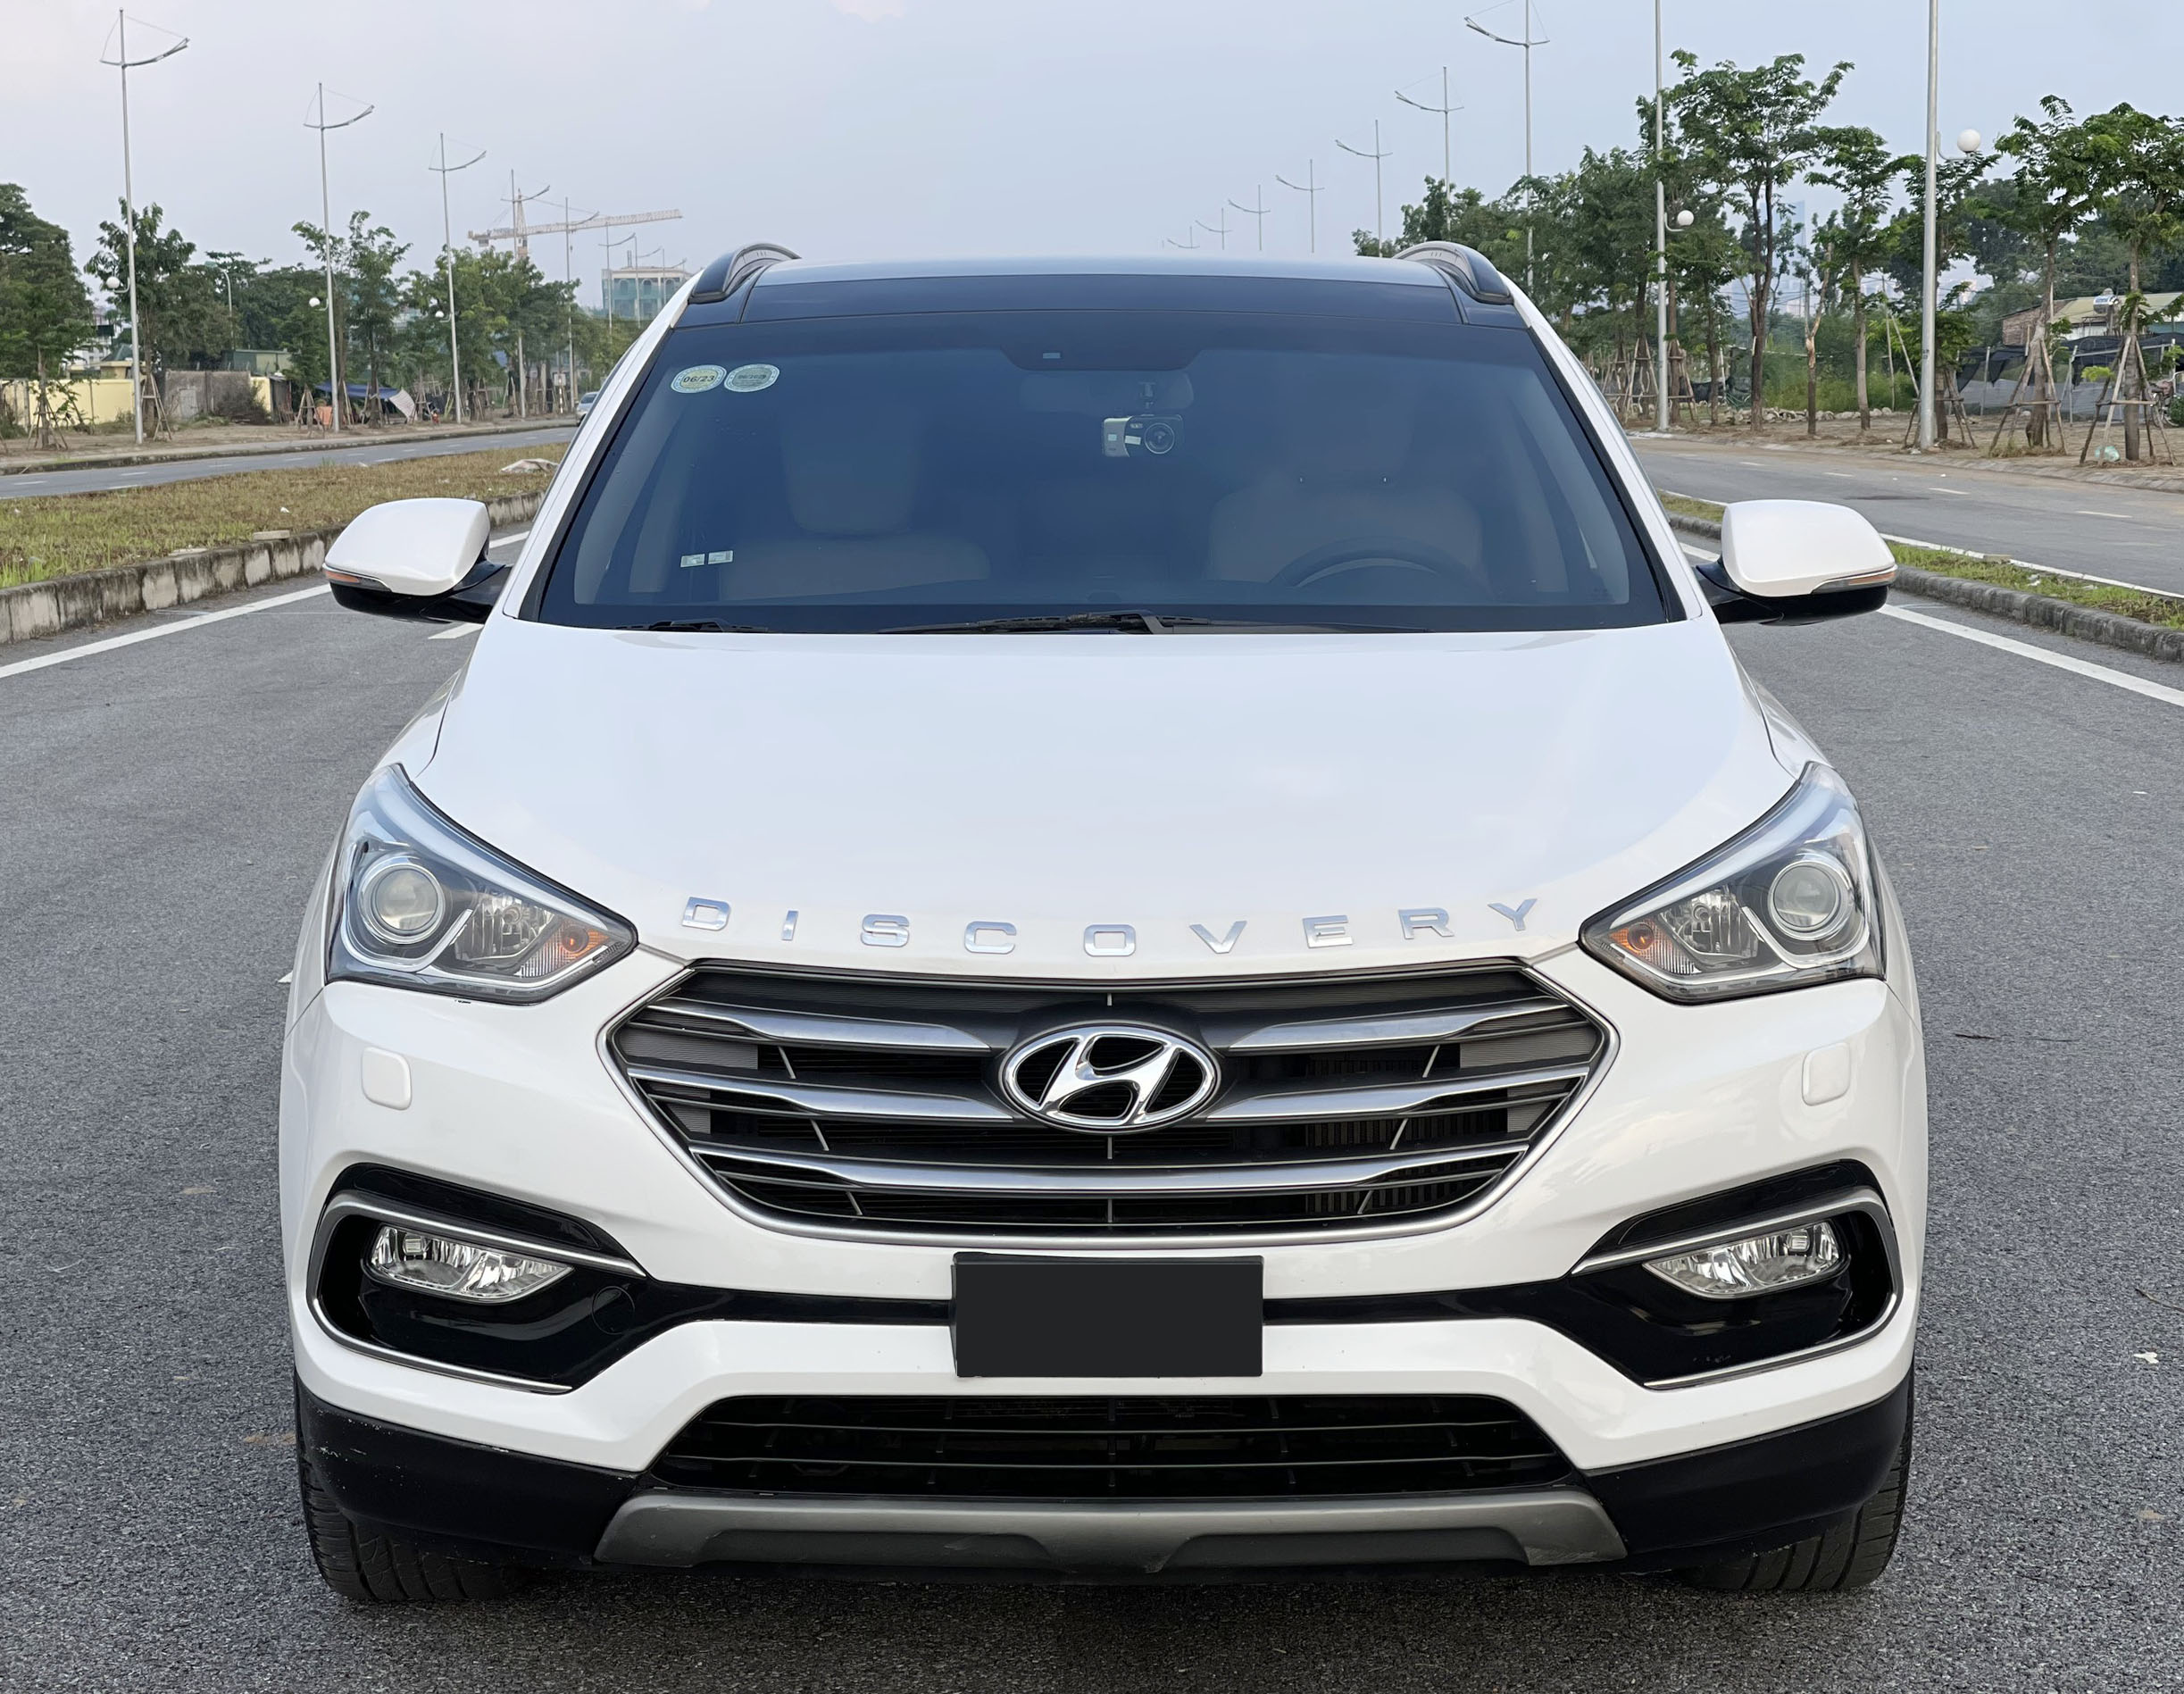 Bán Hyundai SantaFe 2018 Hiện đại trong từng chi tiết thiết kế